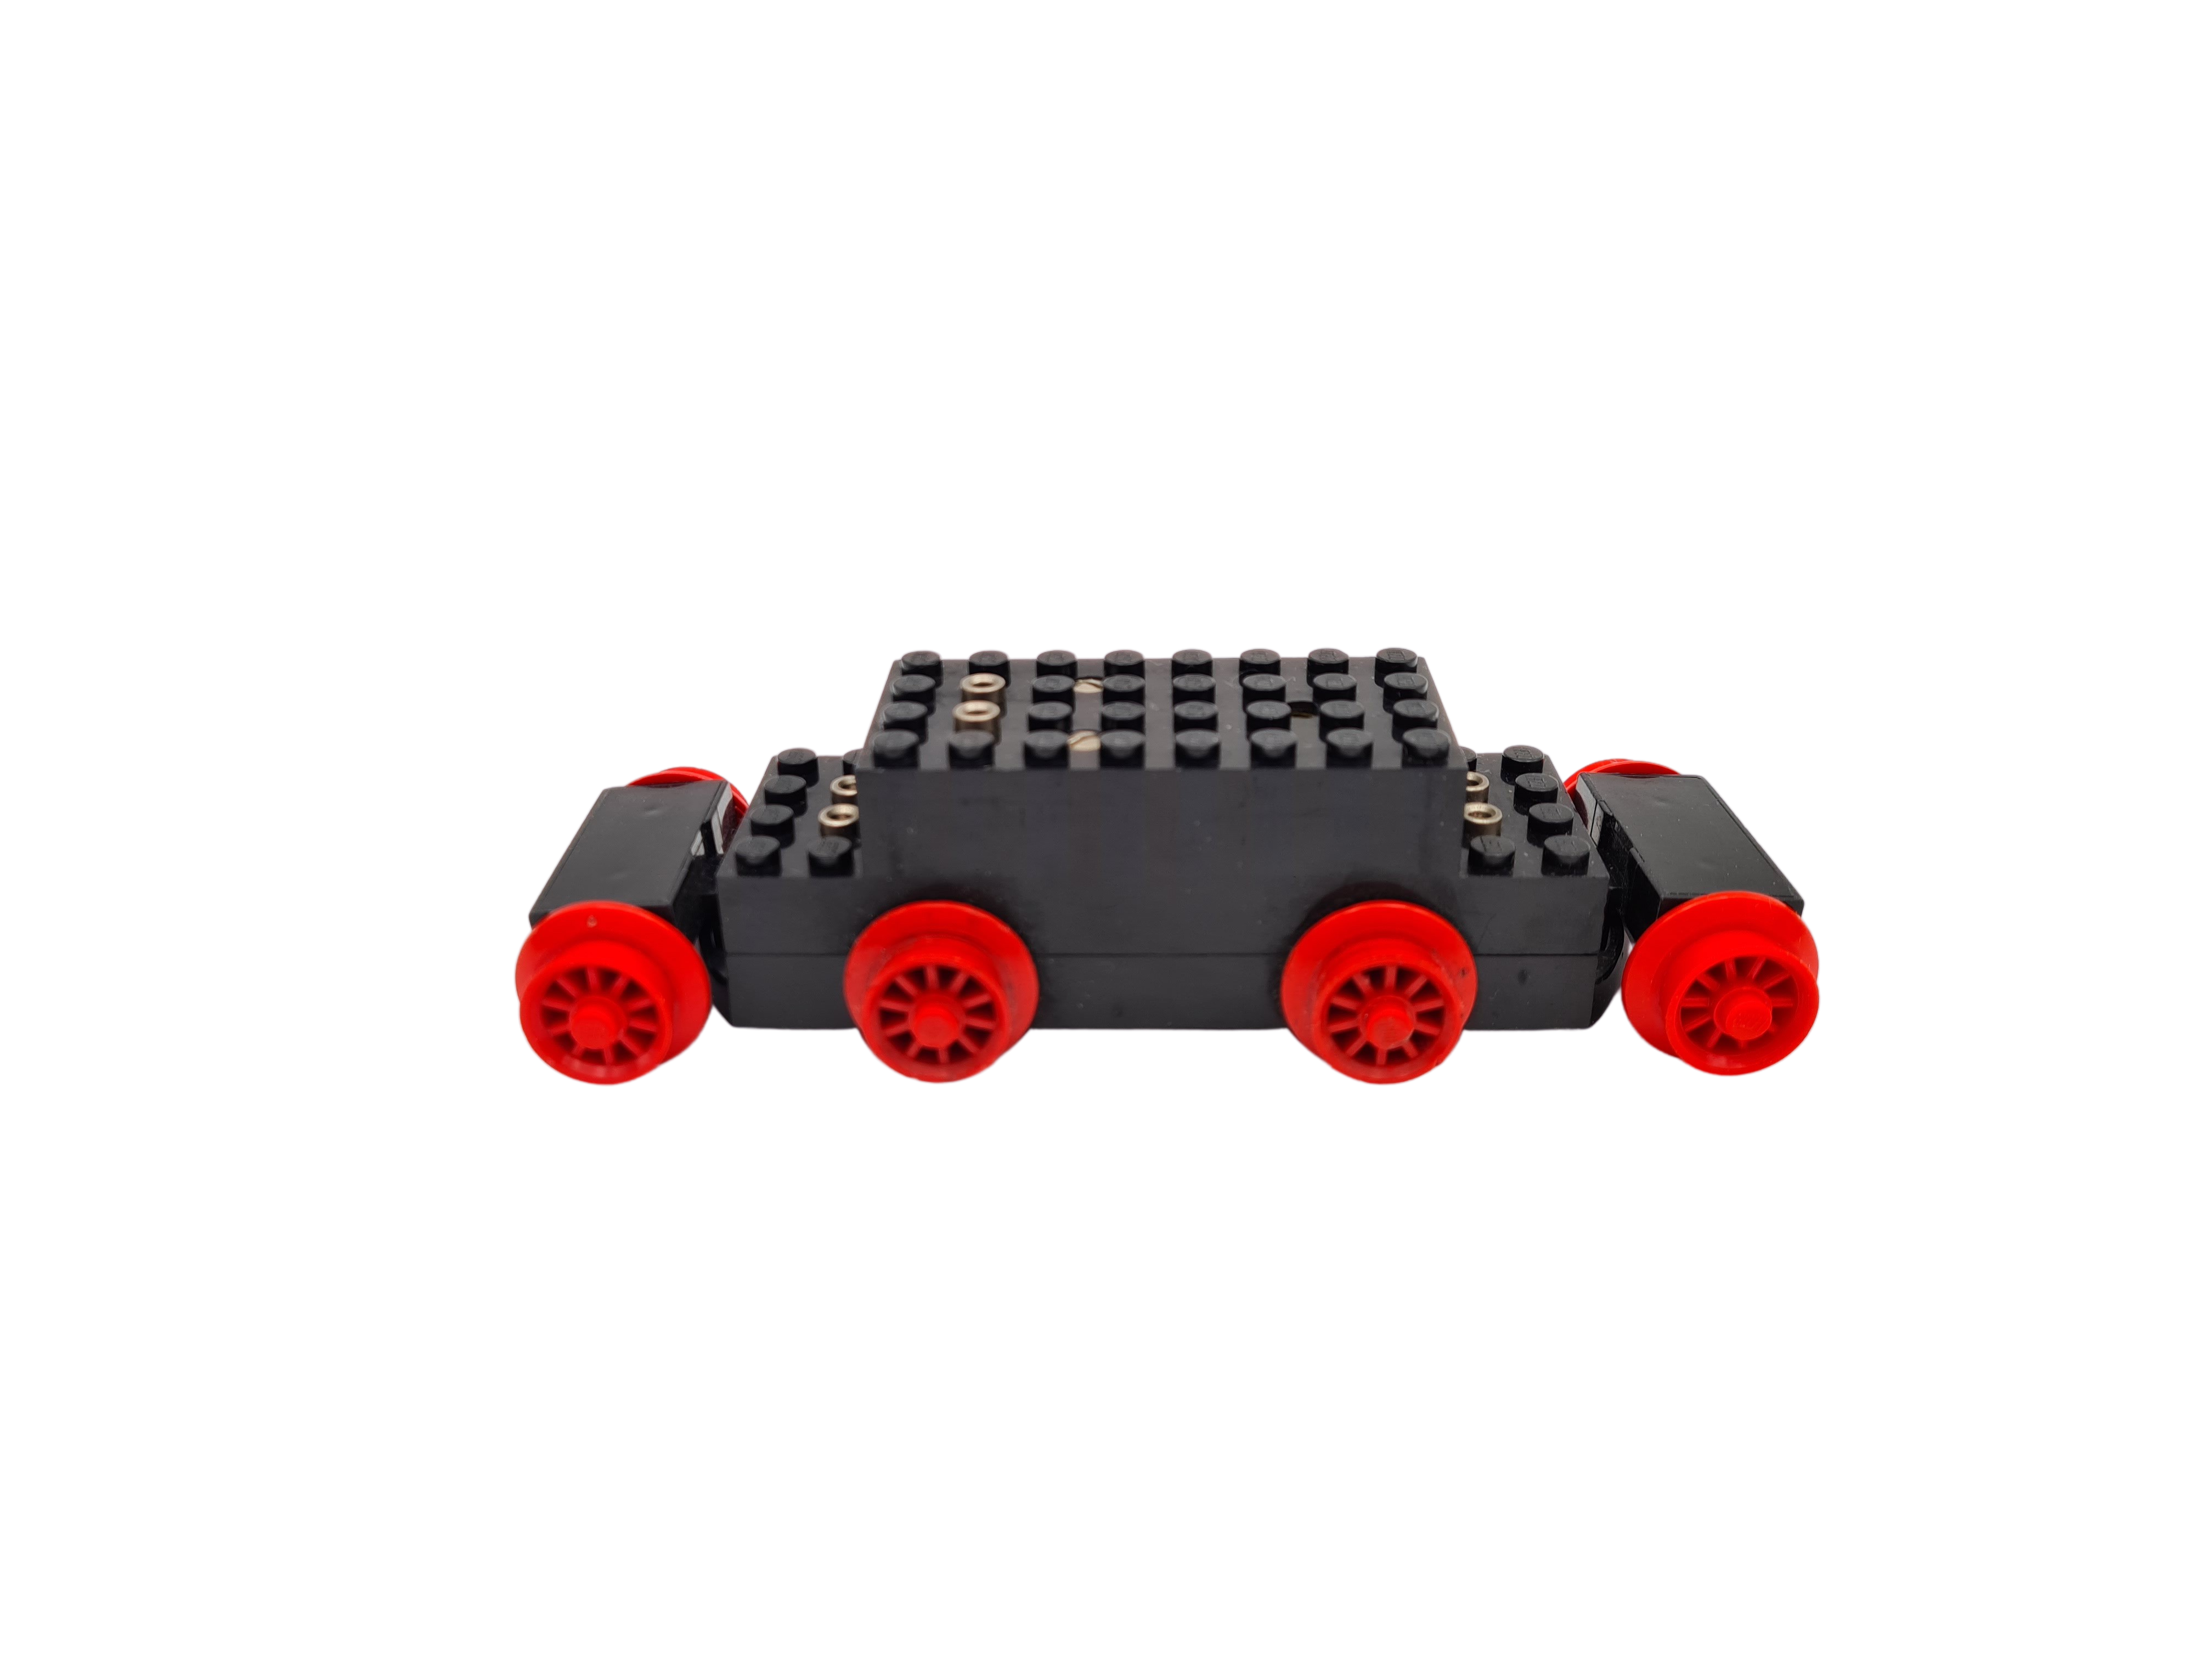 4,5V Eisenbahn TRAIN 2x1 Bedruckter Stein Kühler ROT 2 Lego 12V 